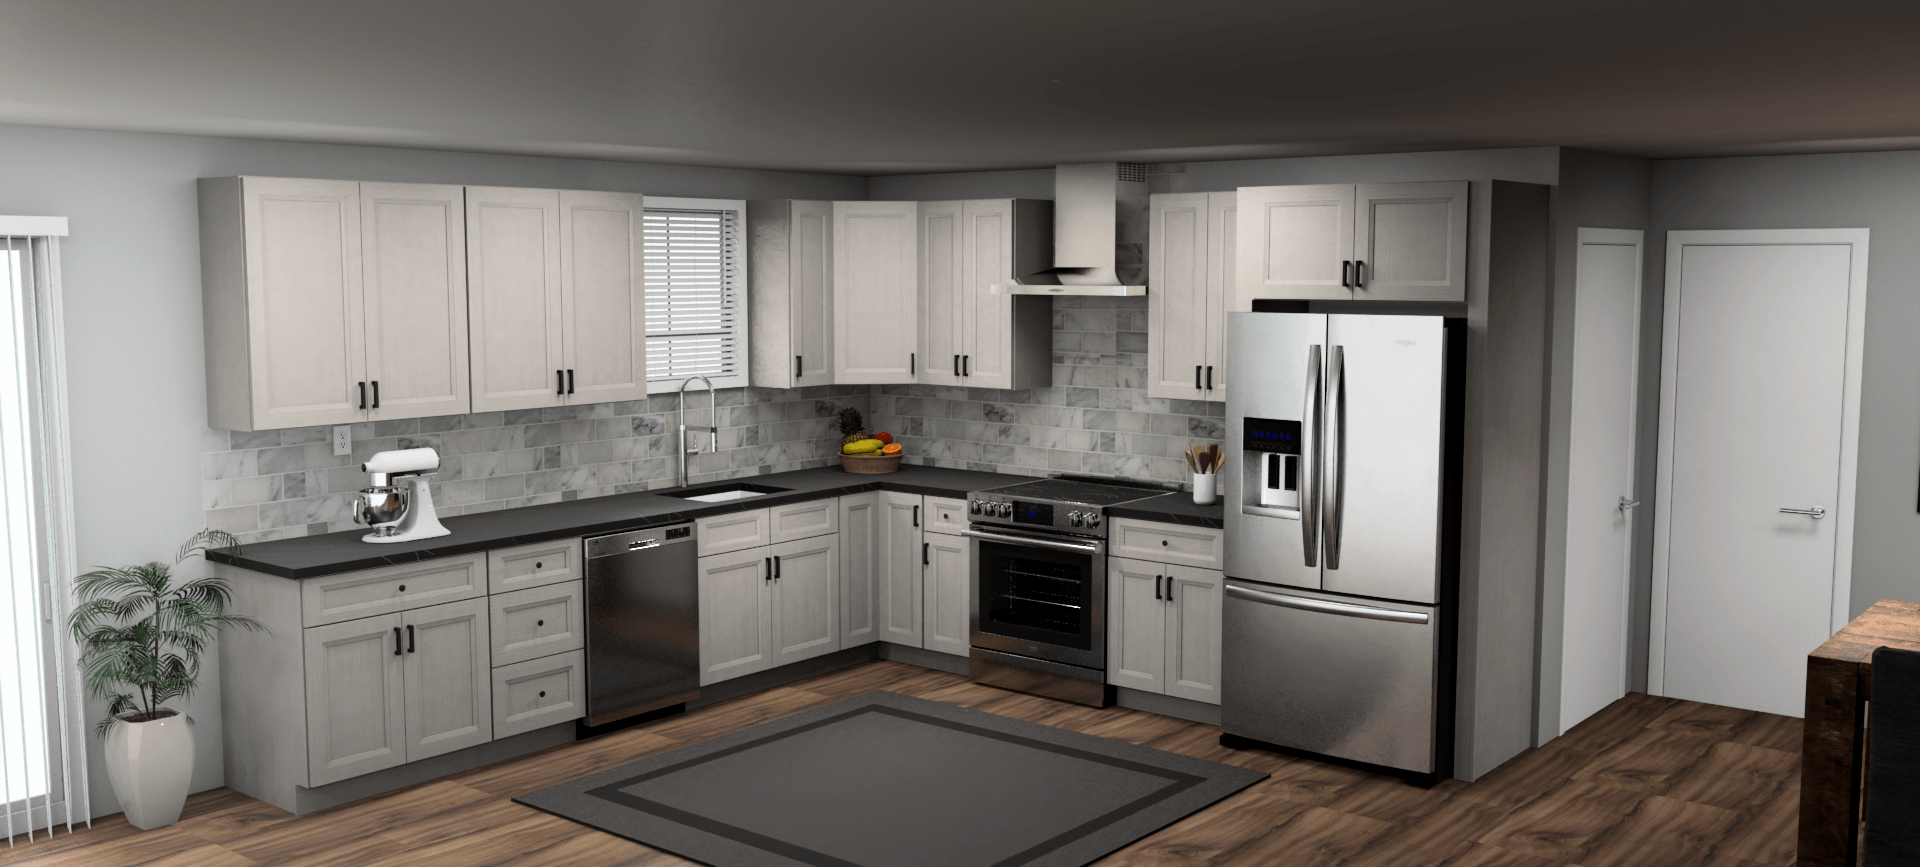 Fabuwood Allure Onyx Horizon 12 x 12 L Shaped Kitchen Main Layout Photo